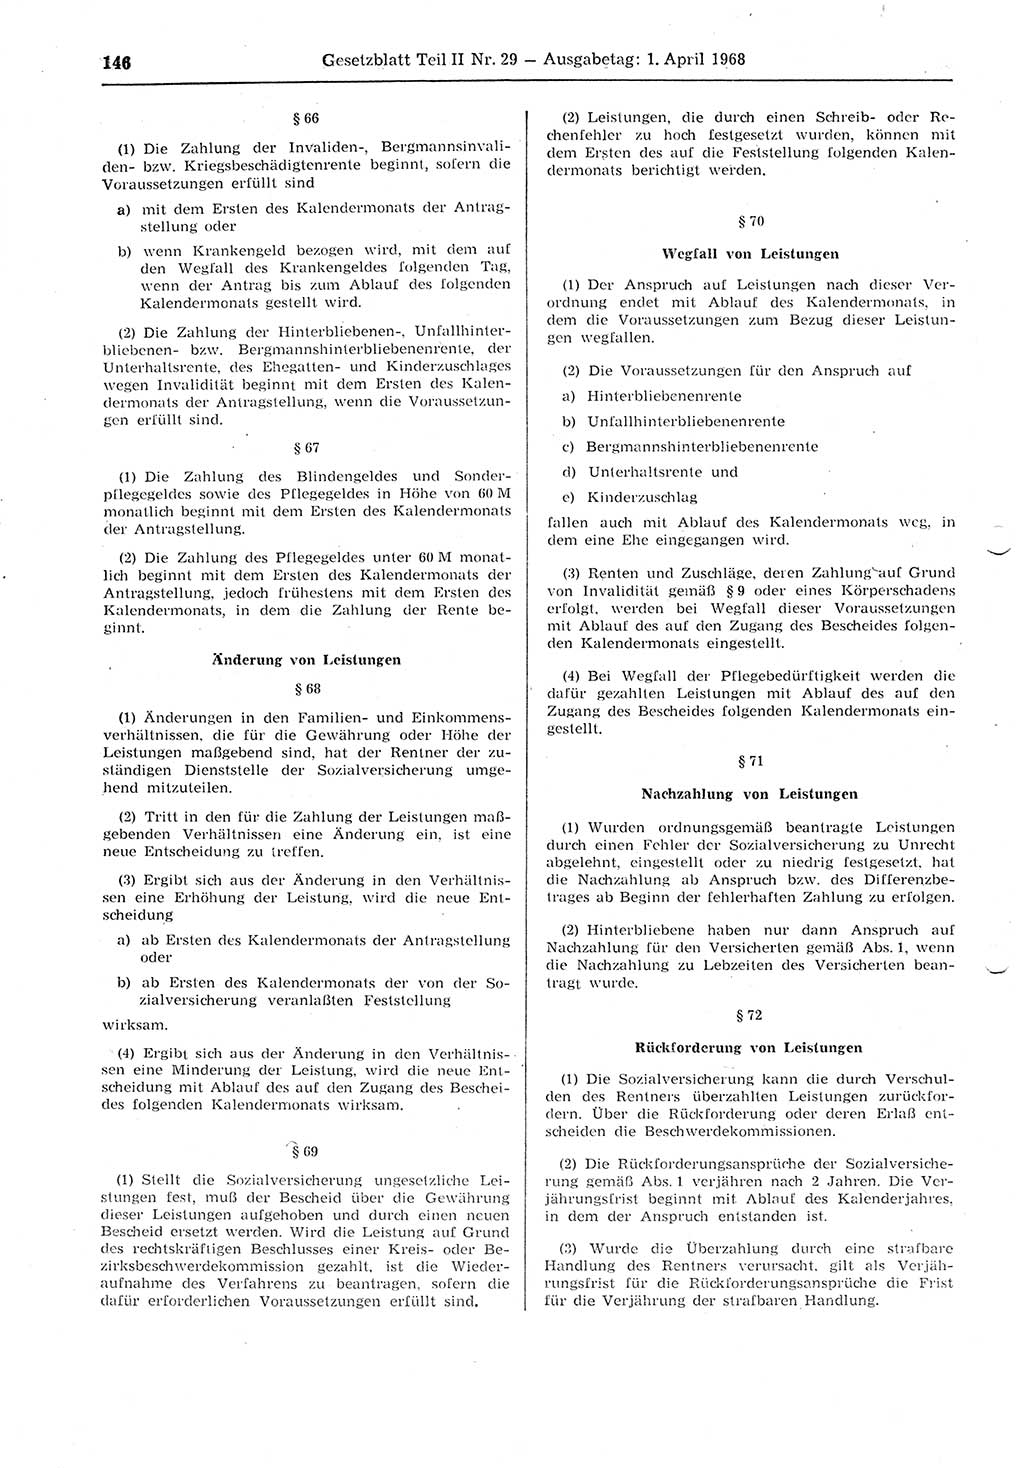 Gesetzblatt (GBl.) der Deutschen Demokratischen Republik (DDR) Teil ⅠⅠ 1968, Seite 146 (GBl. DDR ⅠⅠ 1968, S. 146)